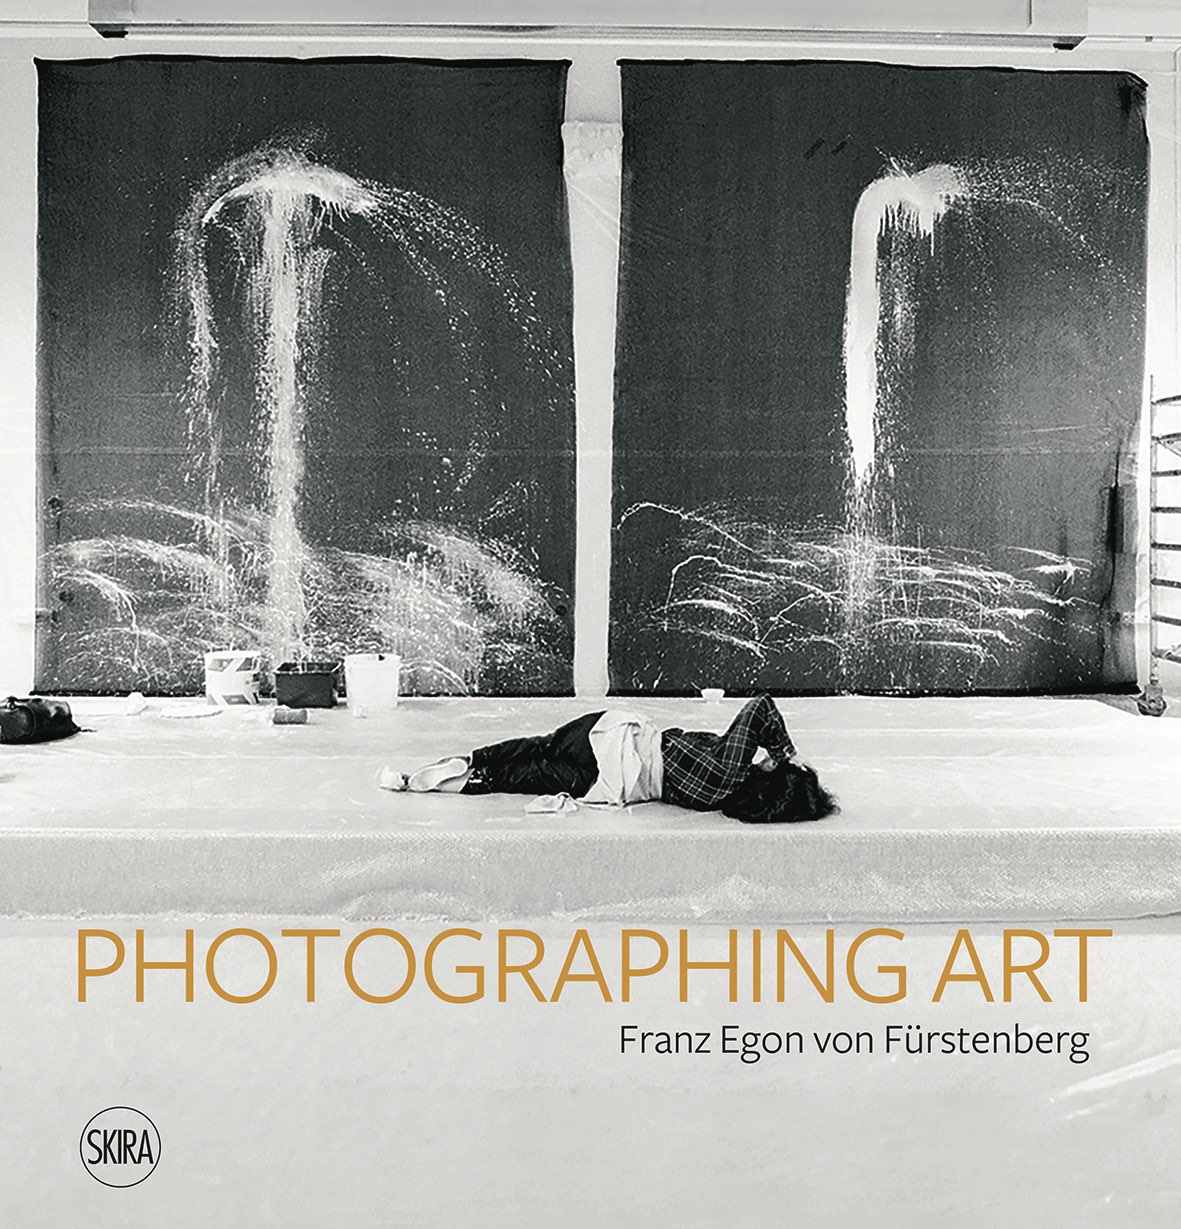 La PHOTOGRAPHING ART di Franz Egon von Fürstenberg